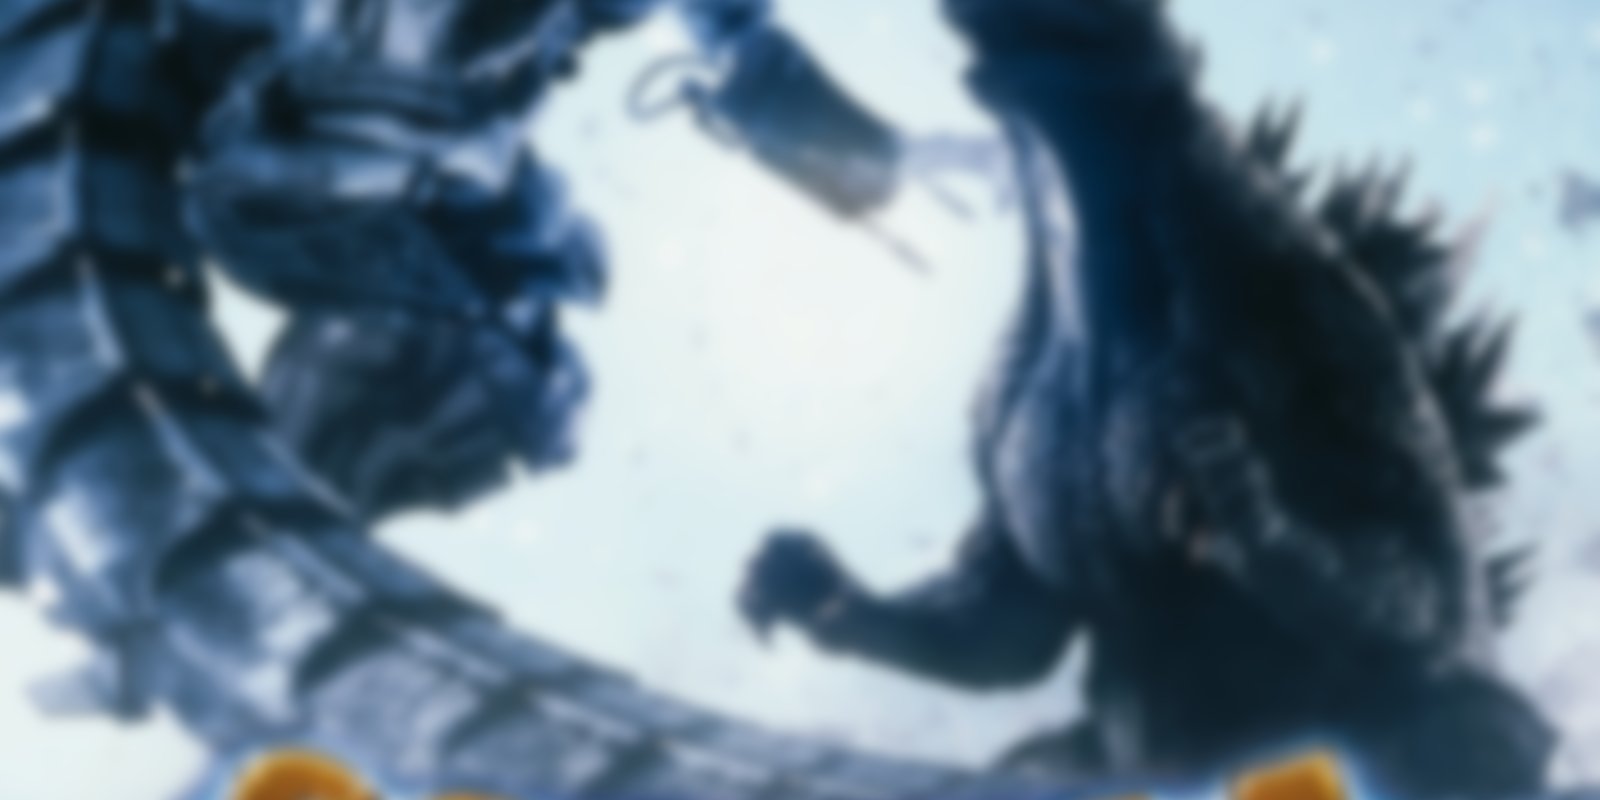 Godzilla against Mechagodzilla